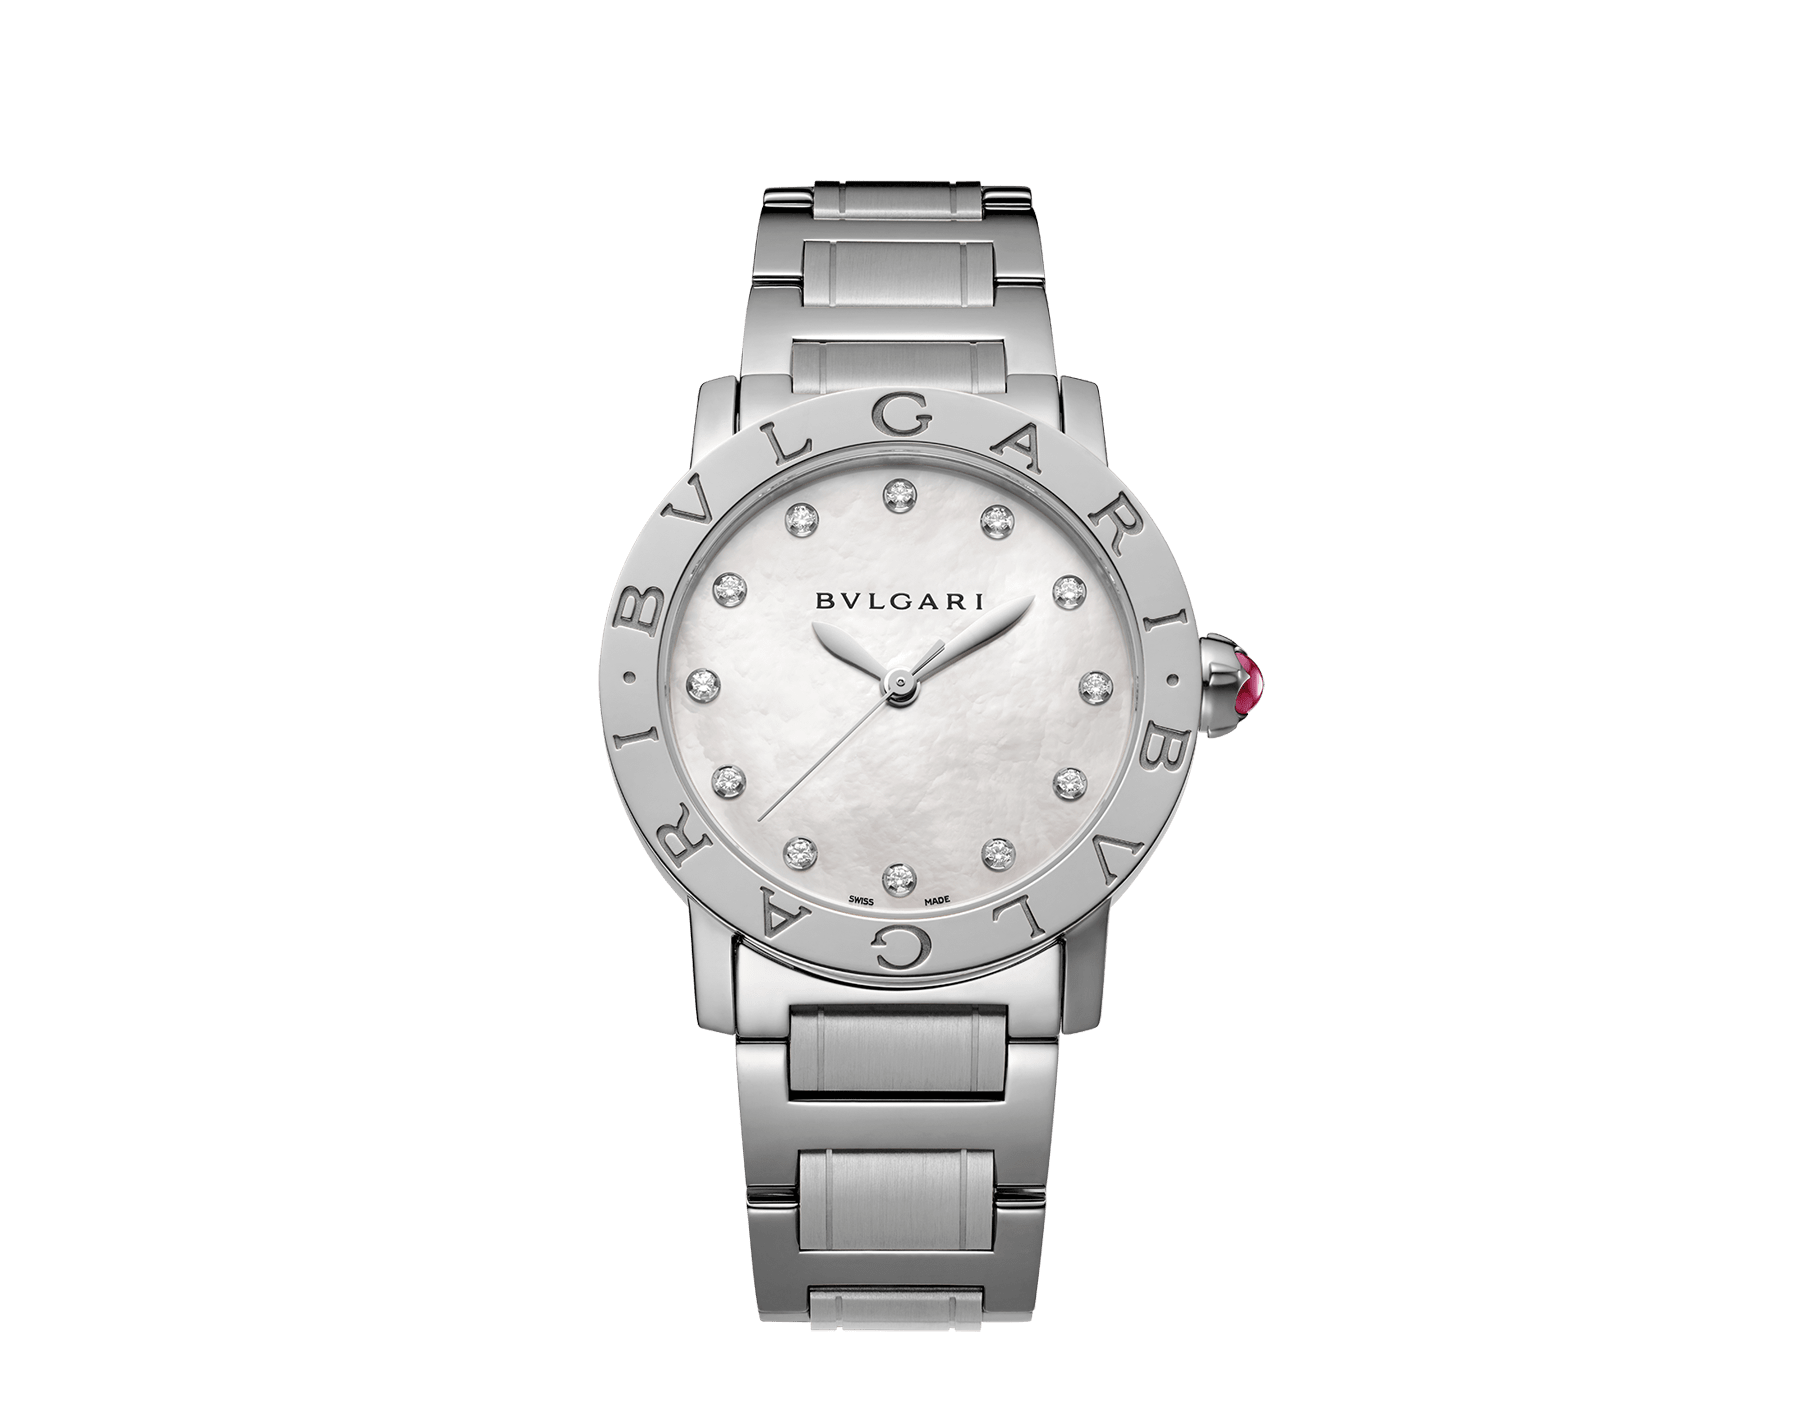 price for bvlgari watches